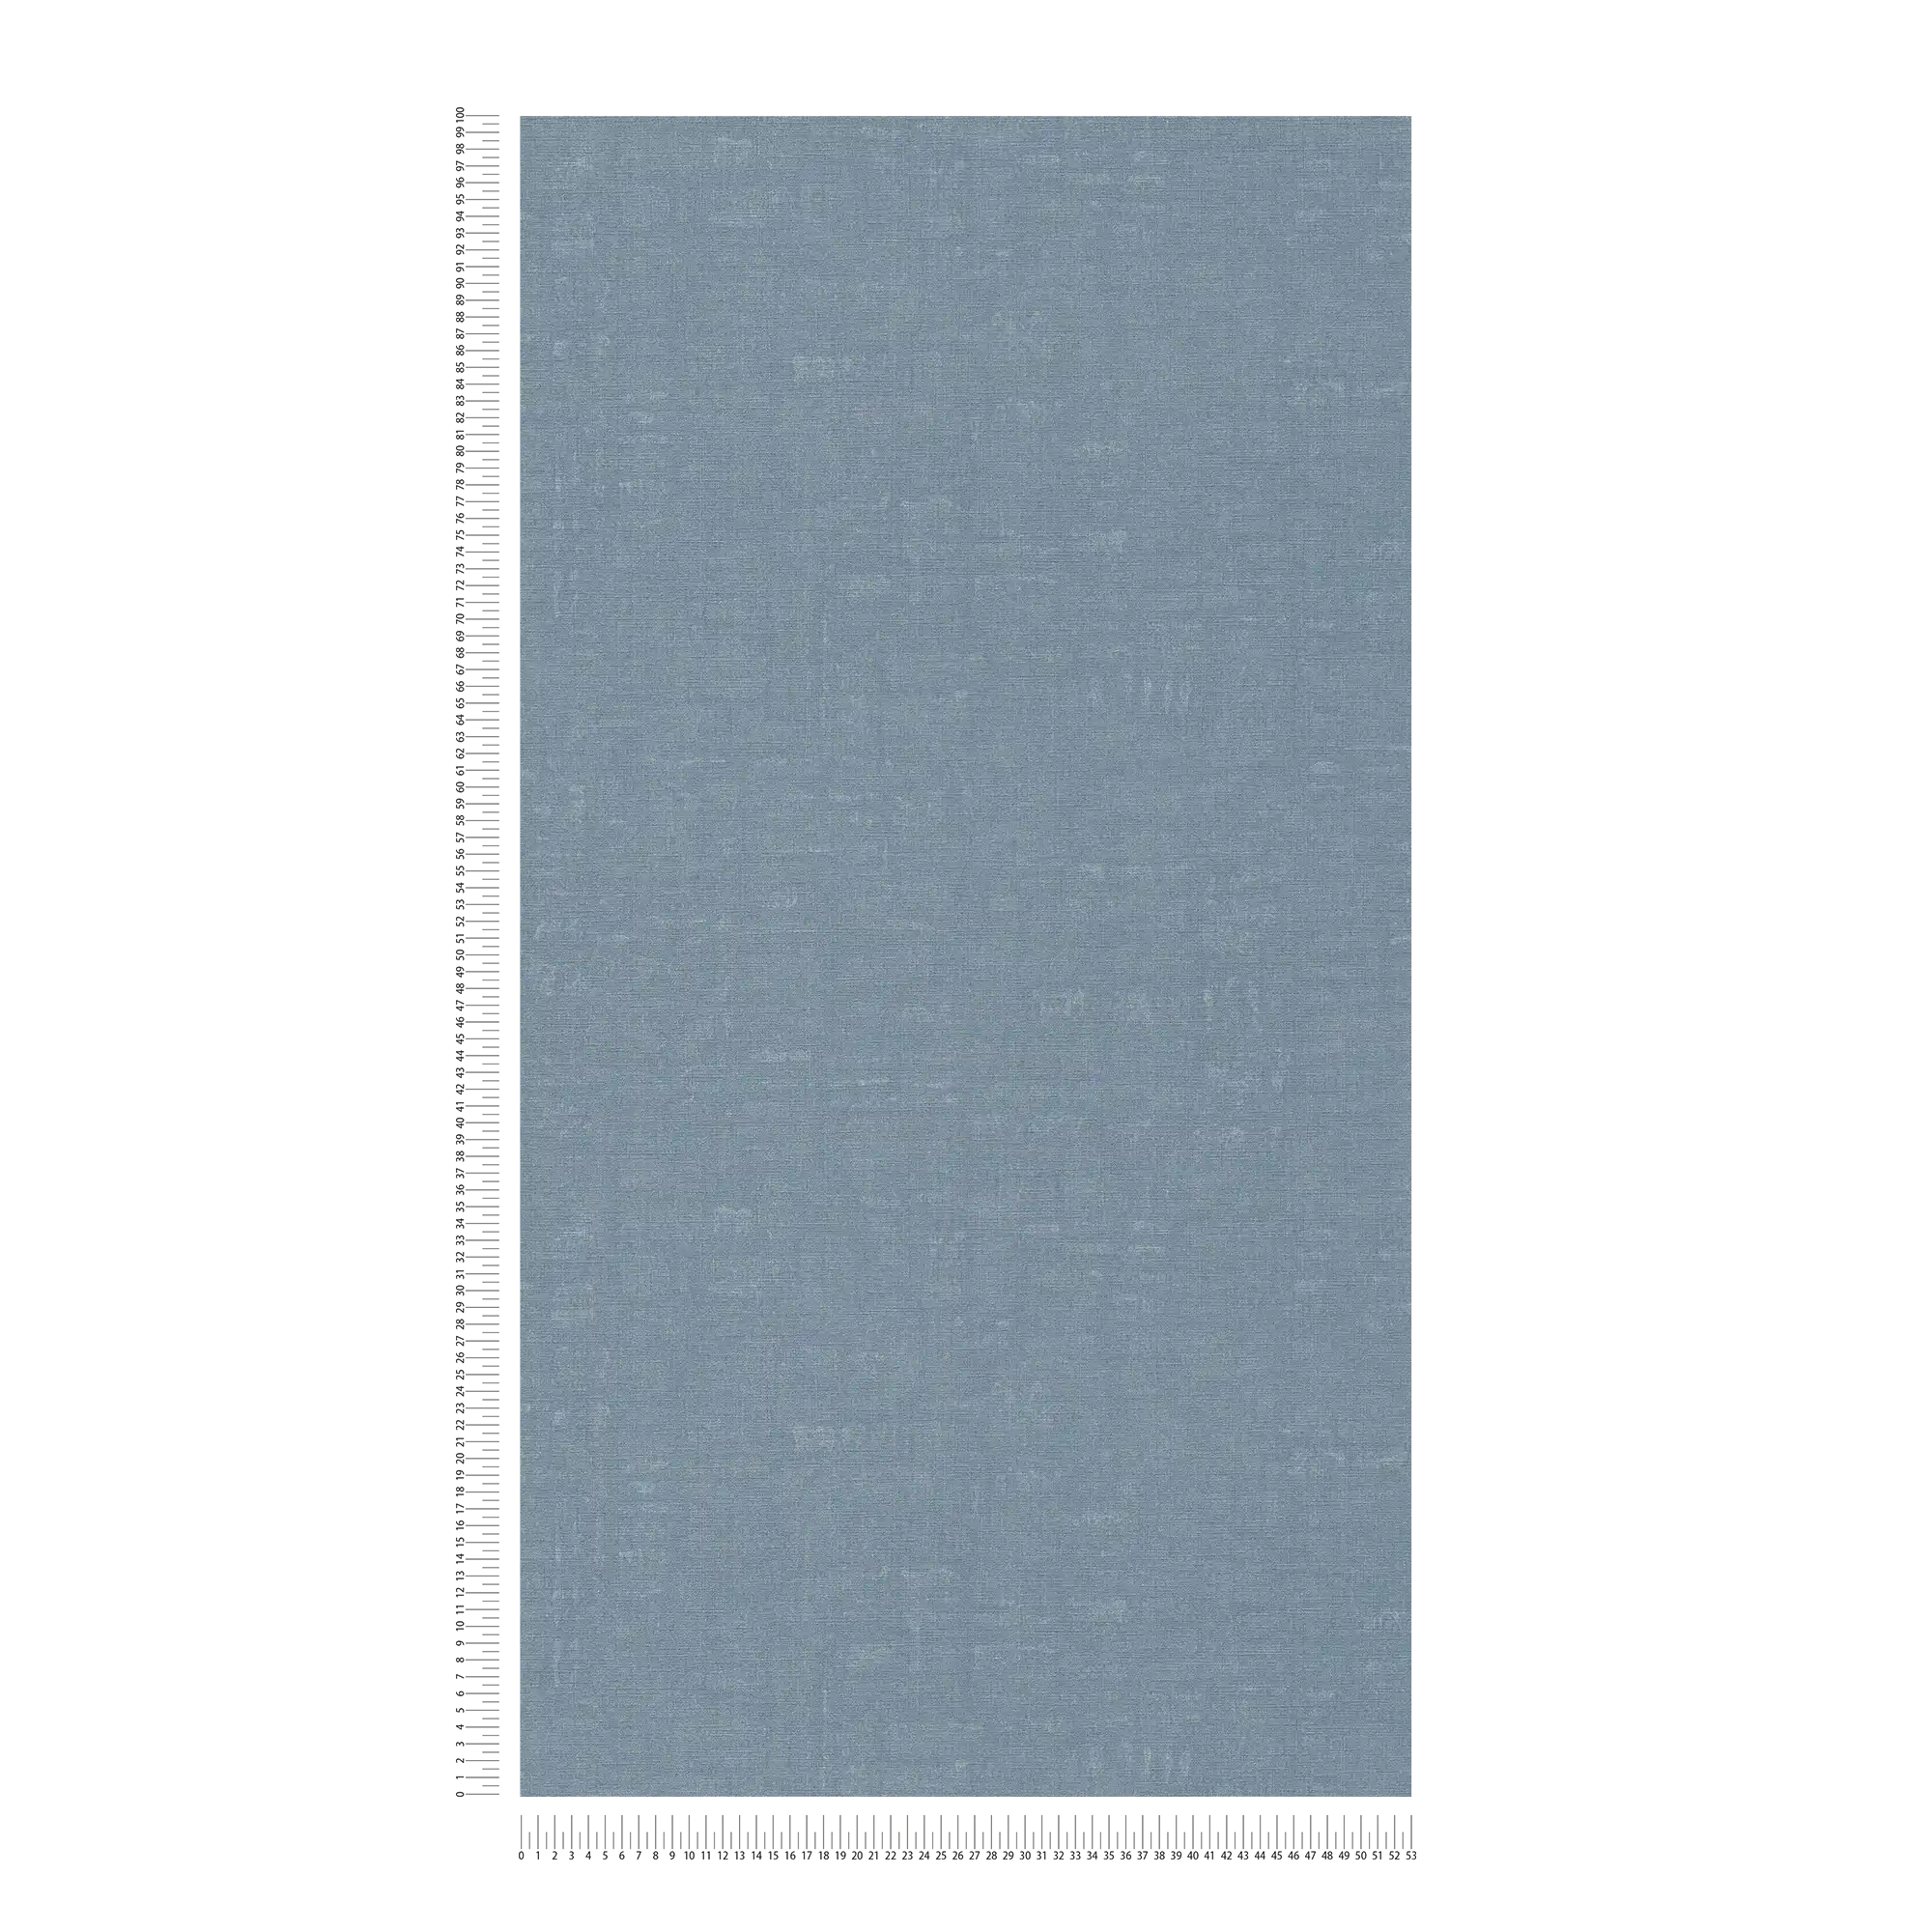             Melierte Tapete unifarben mit Strukturdesign – Blau
        